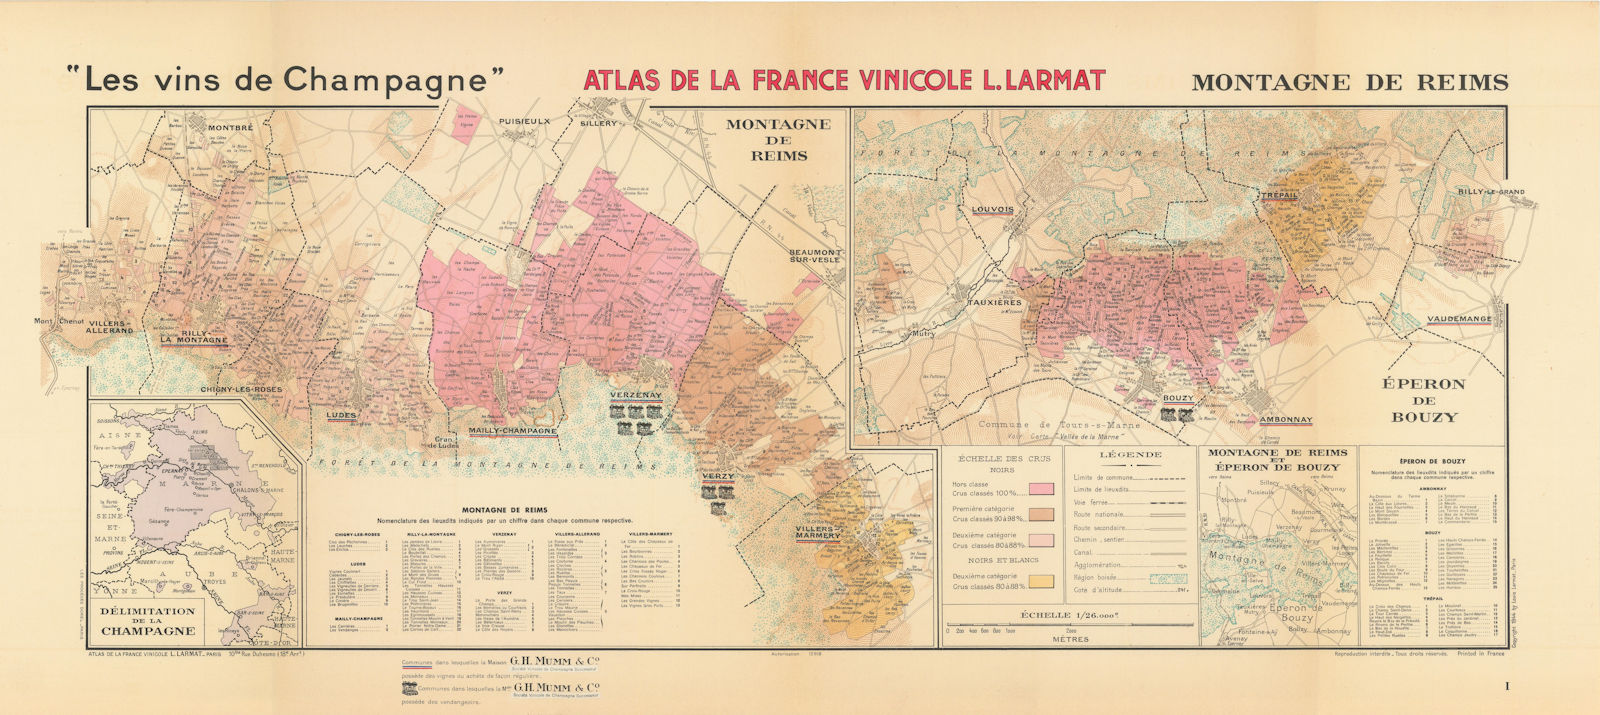 CHAMPAGNE VINEYARD MAP Montagne de Reims. Éperon de Bouzy. Mumm. LARMAT 1944